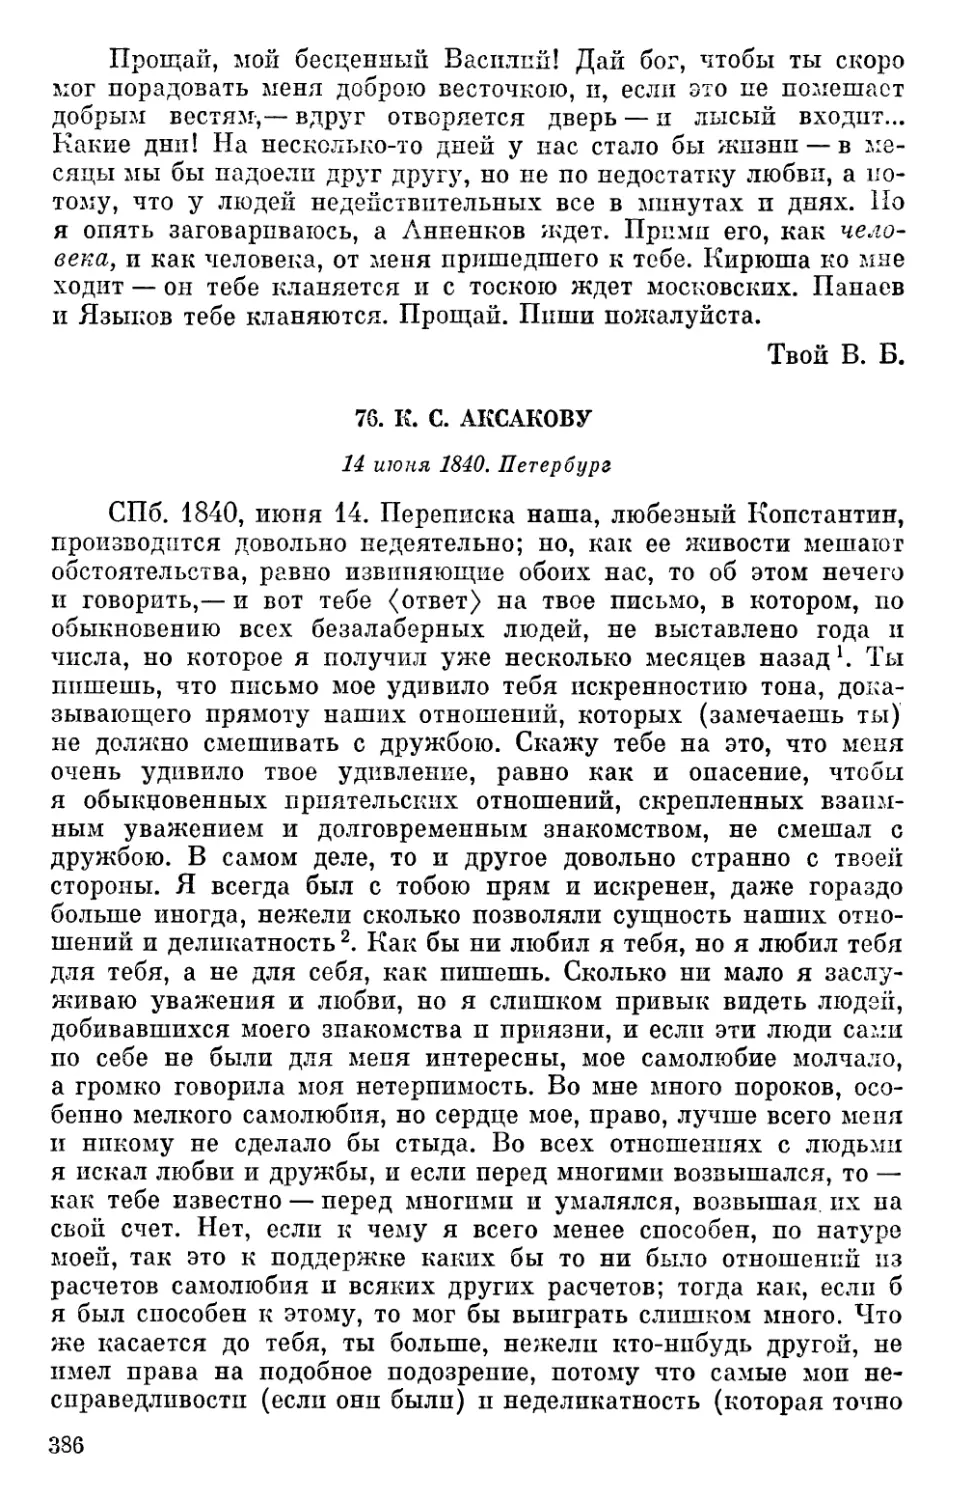 76. К. С. Аксакову. 14 июня 1840